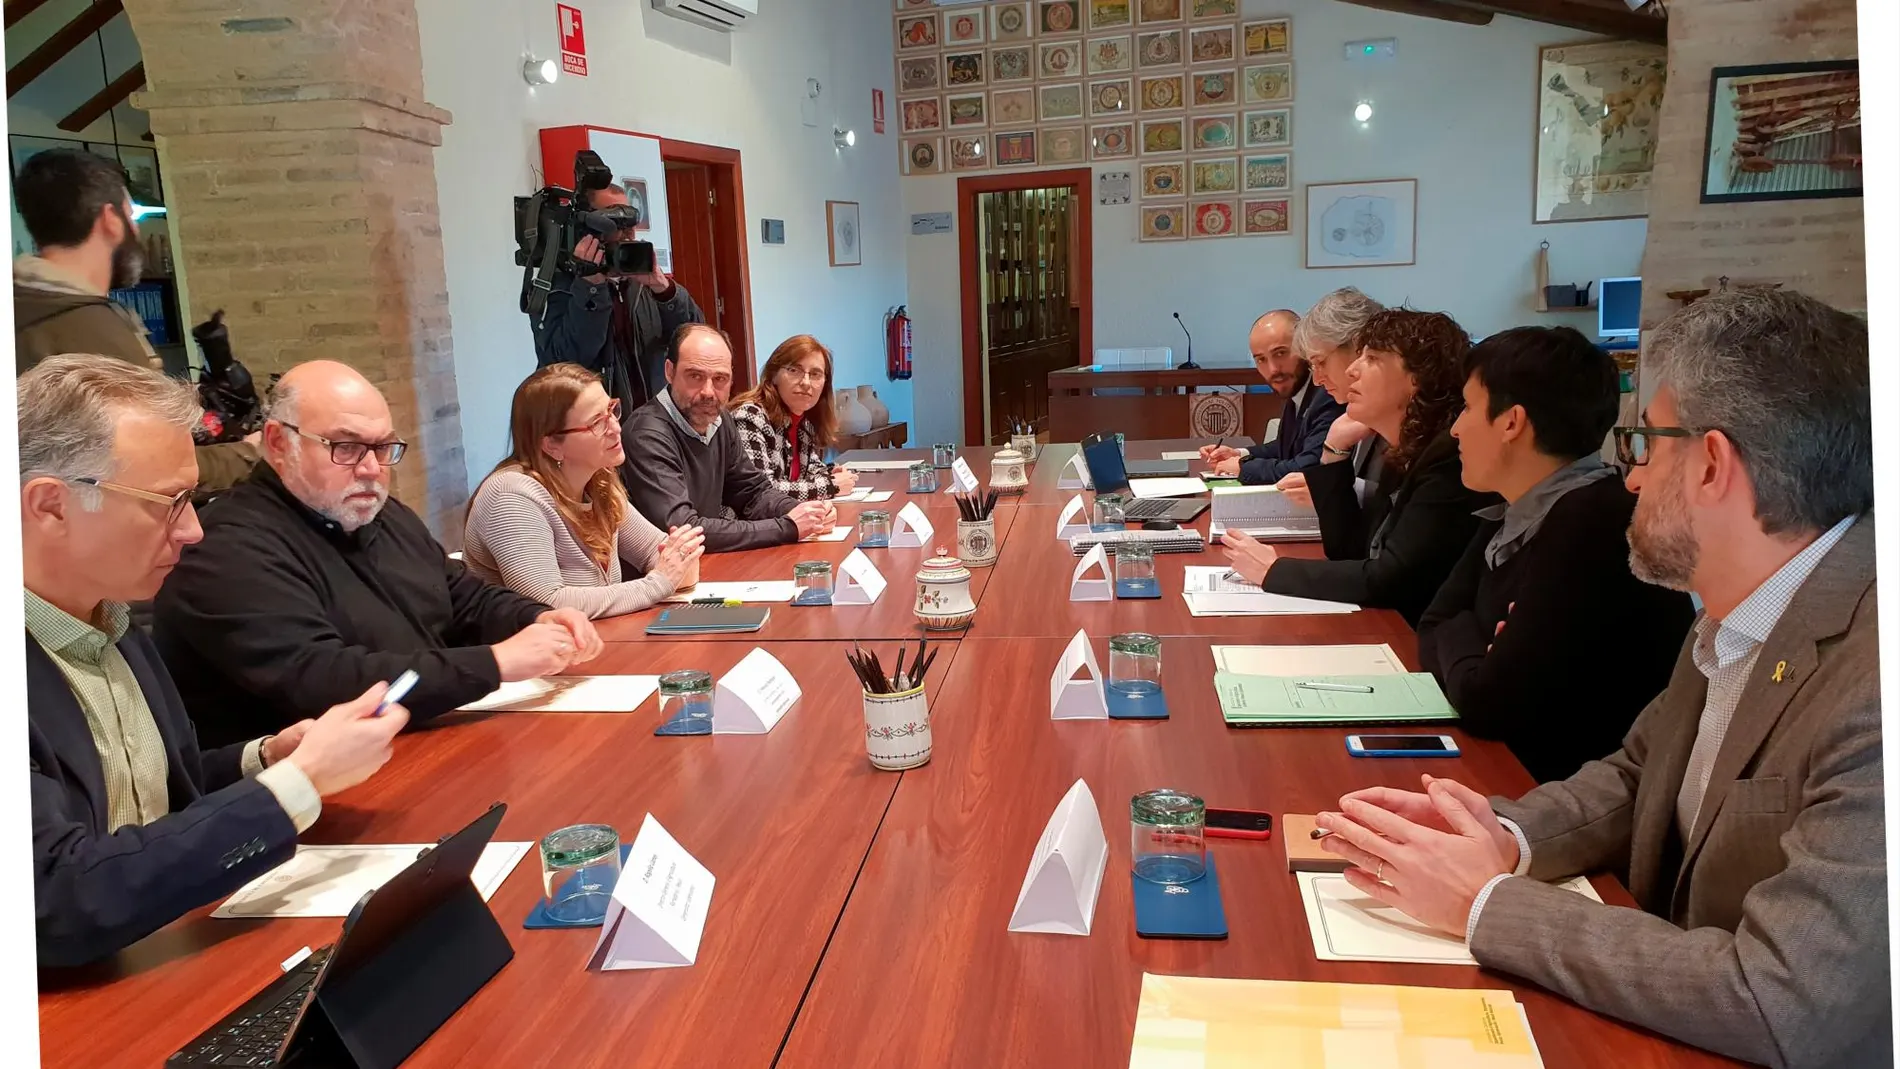 La consellera de Agricultura valenciana, Elena Cebrián, y su equipo, se reunieron con su homóloga catalana, Teresa Jordà y otros representantes de su departamento. LA RAZÓN